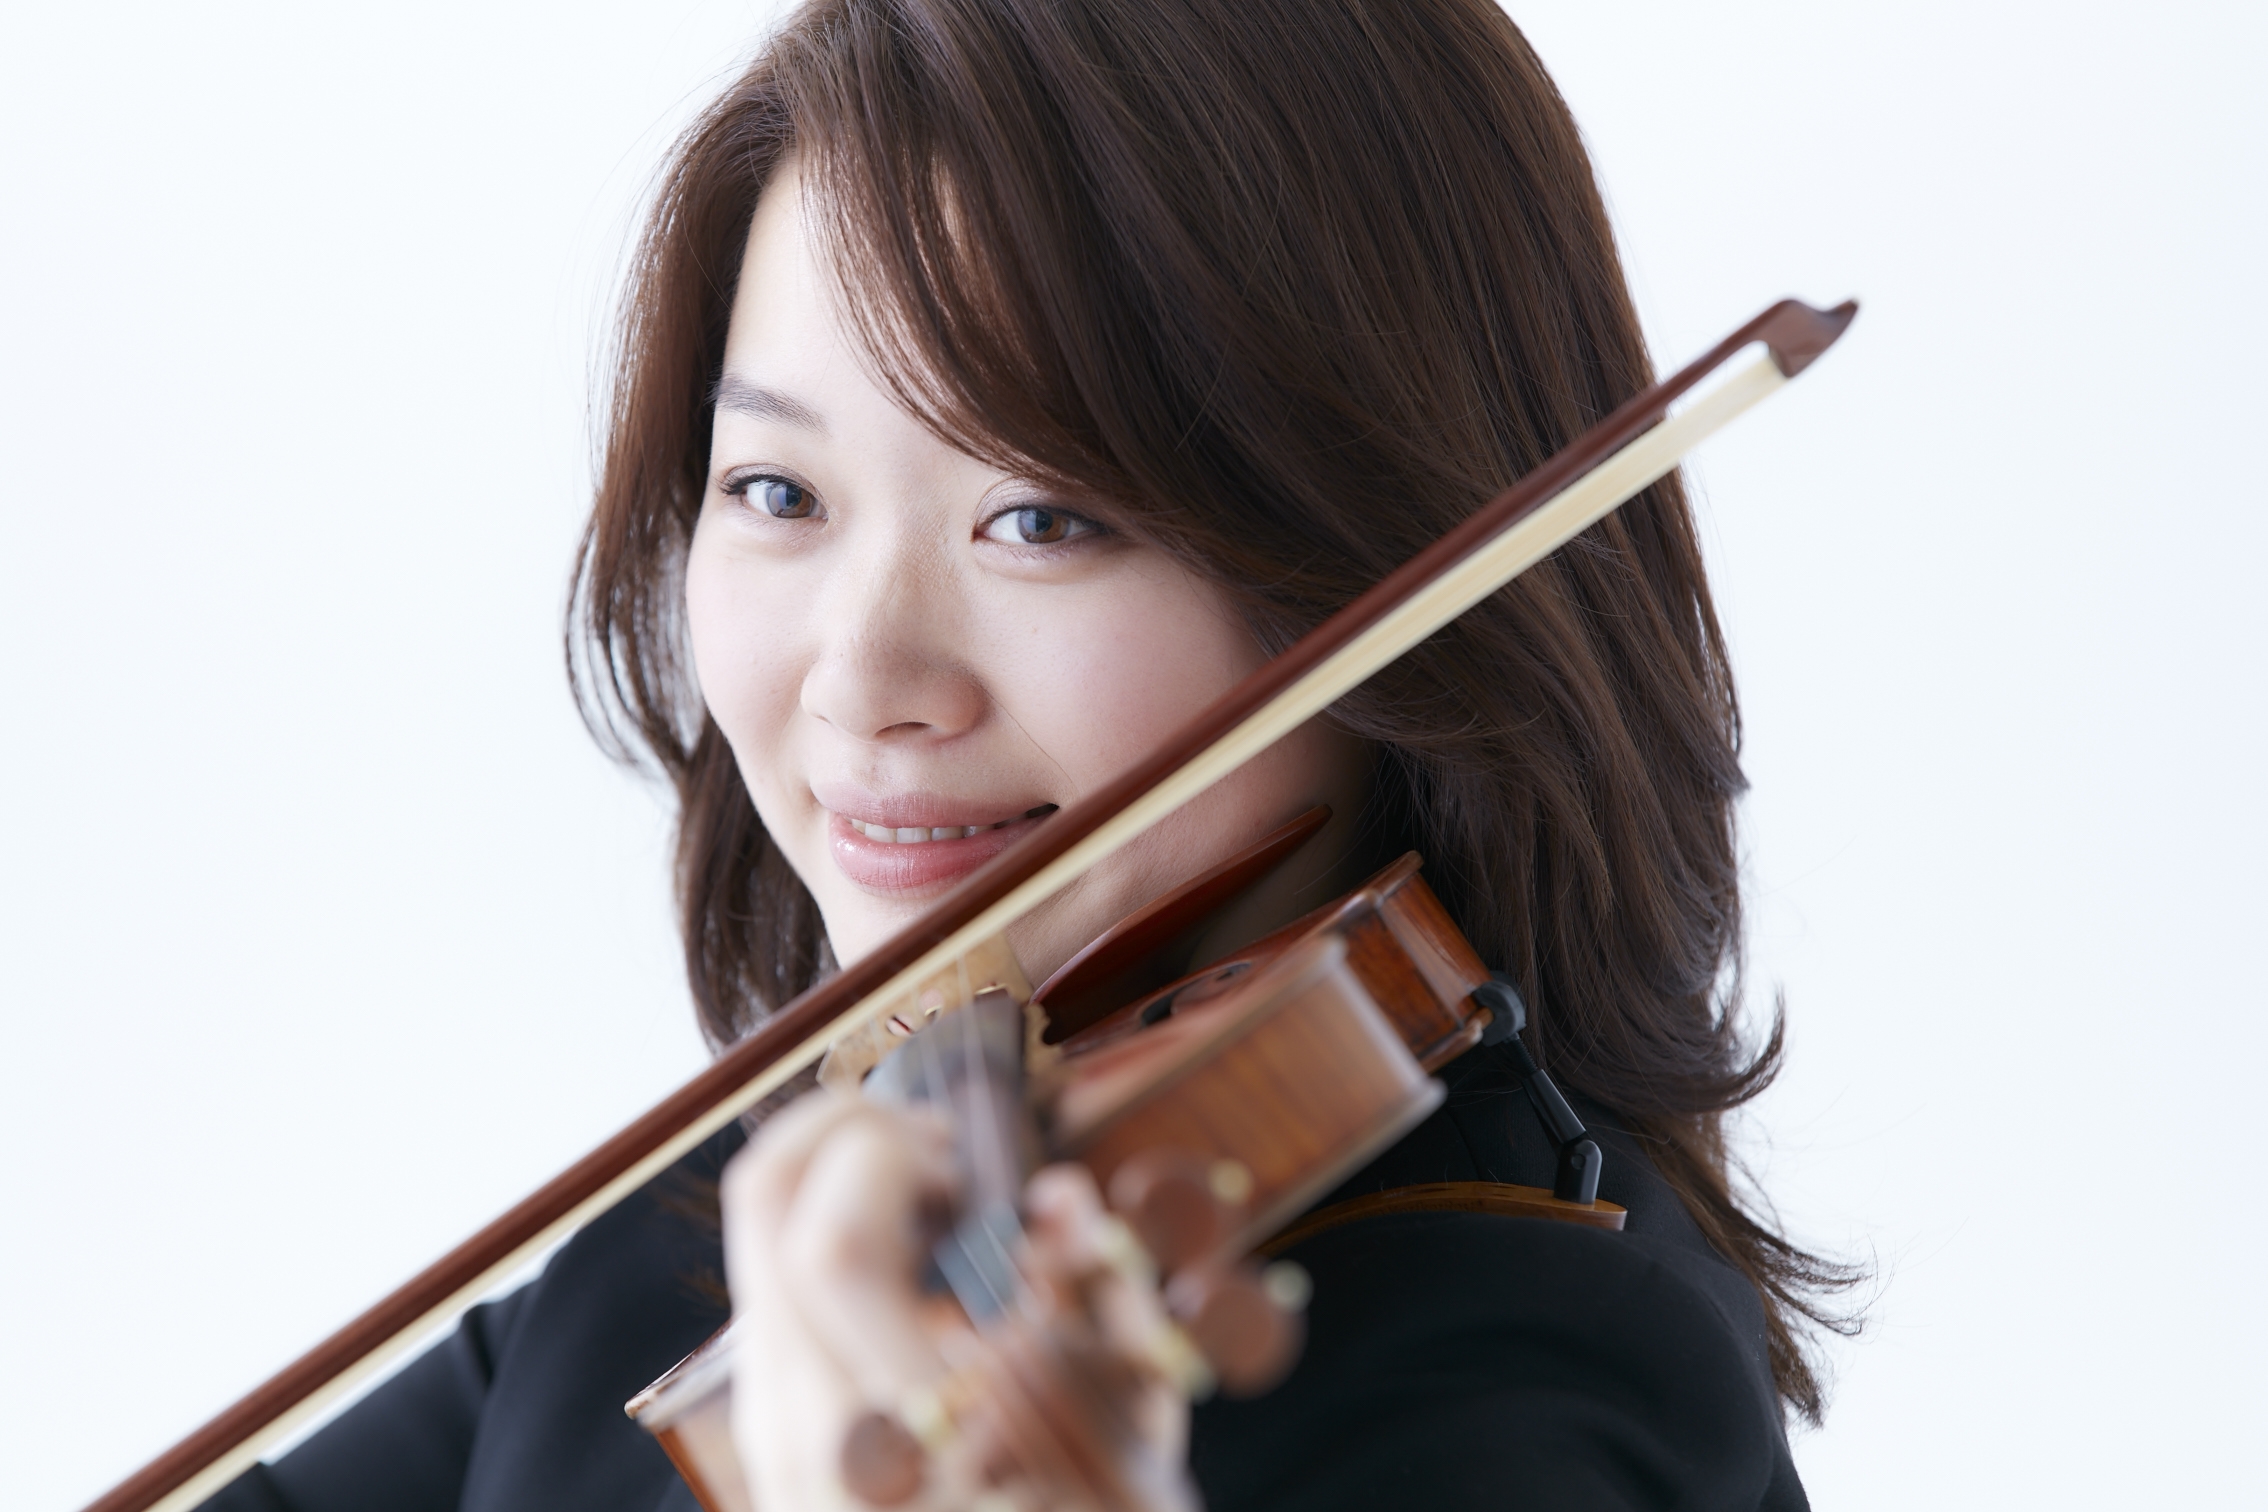 吉岡麻貴子 ヴァイオリン(東京都交響楽団 第1ヴァイオリン副首席奏者)